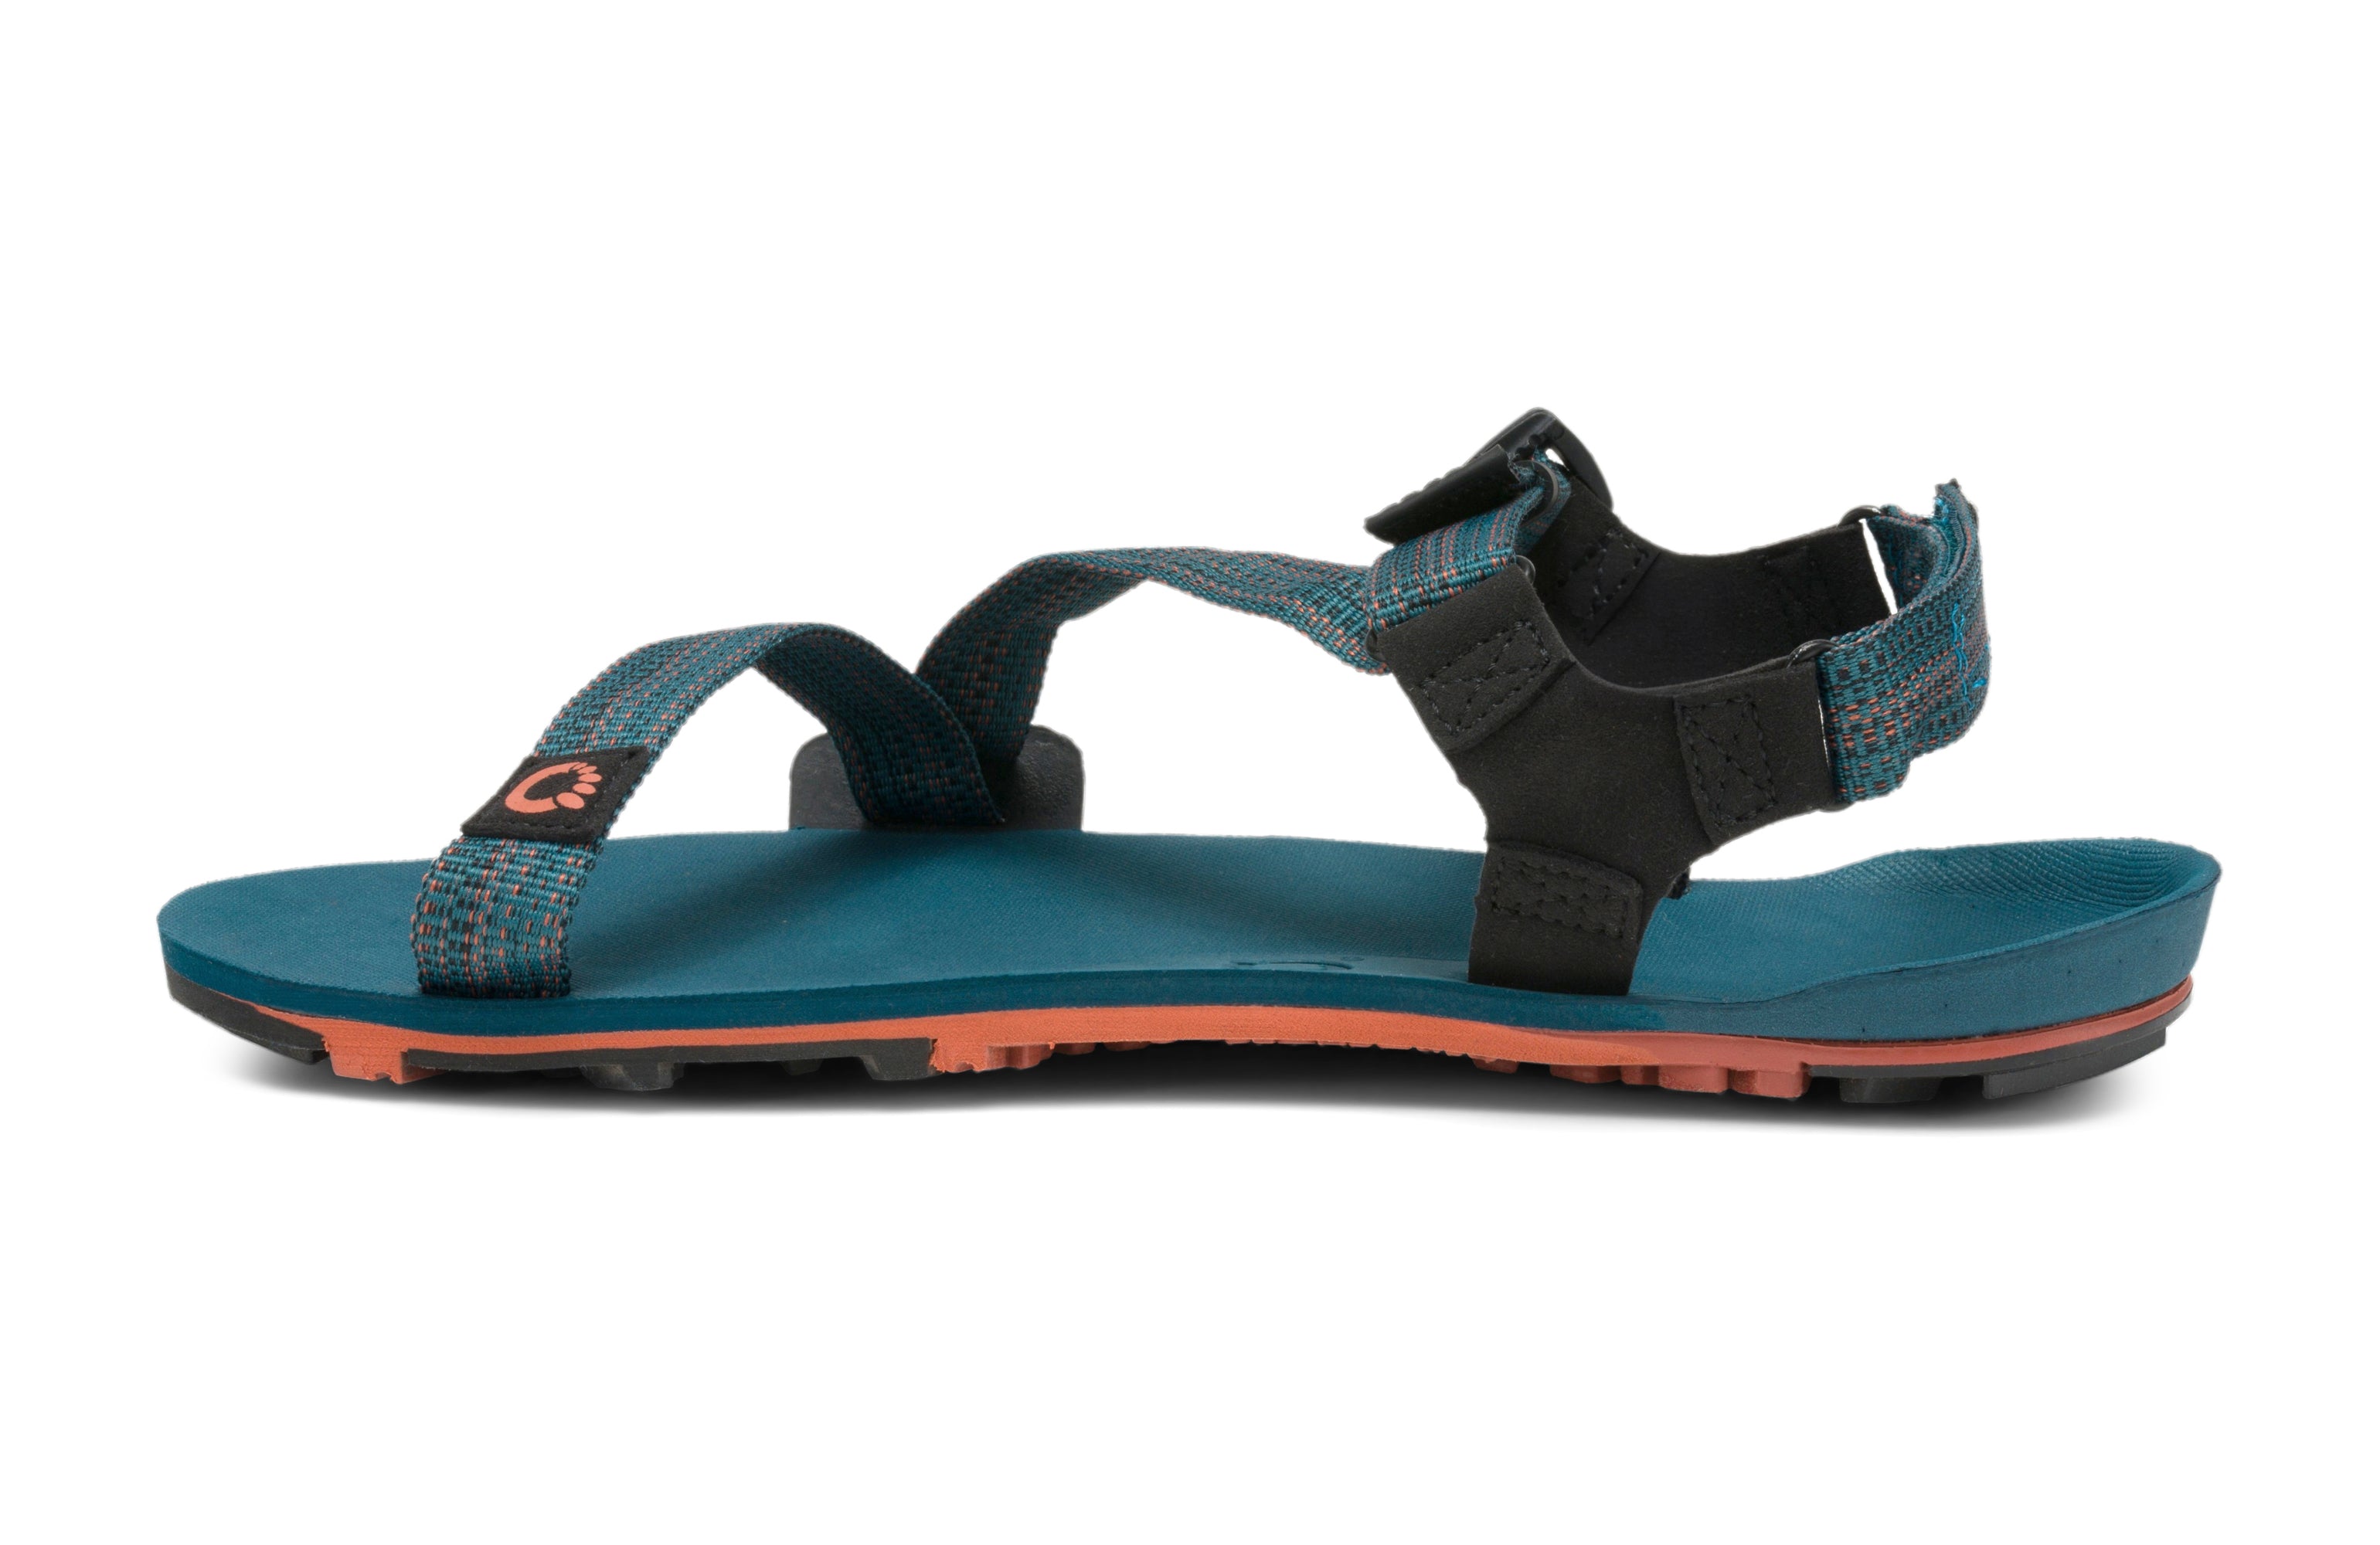 Xero Shoes Z-Trail EV Mens - Sandaler